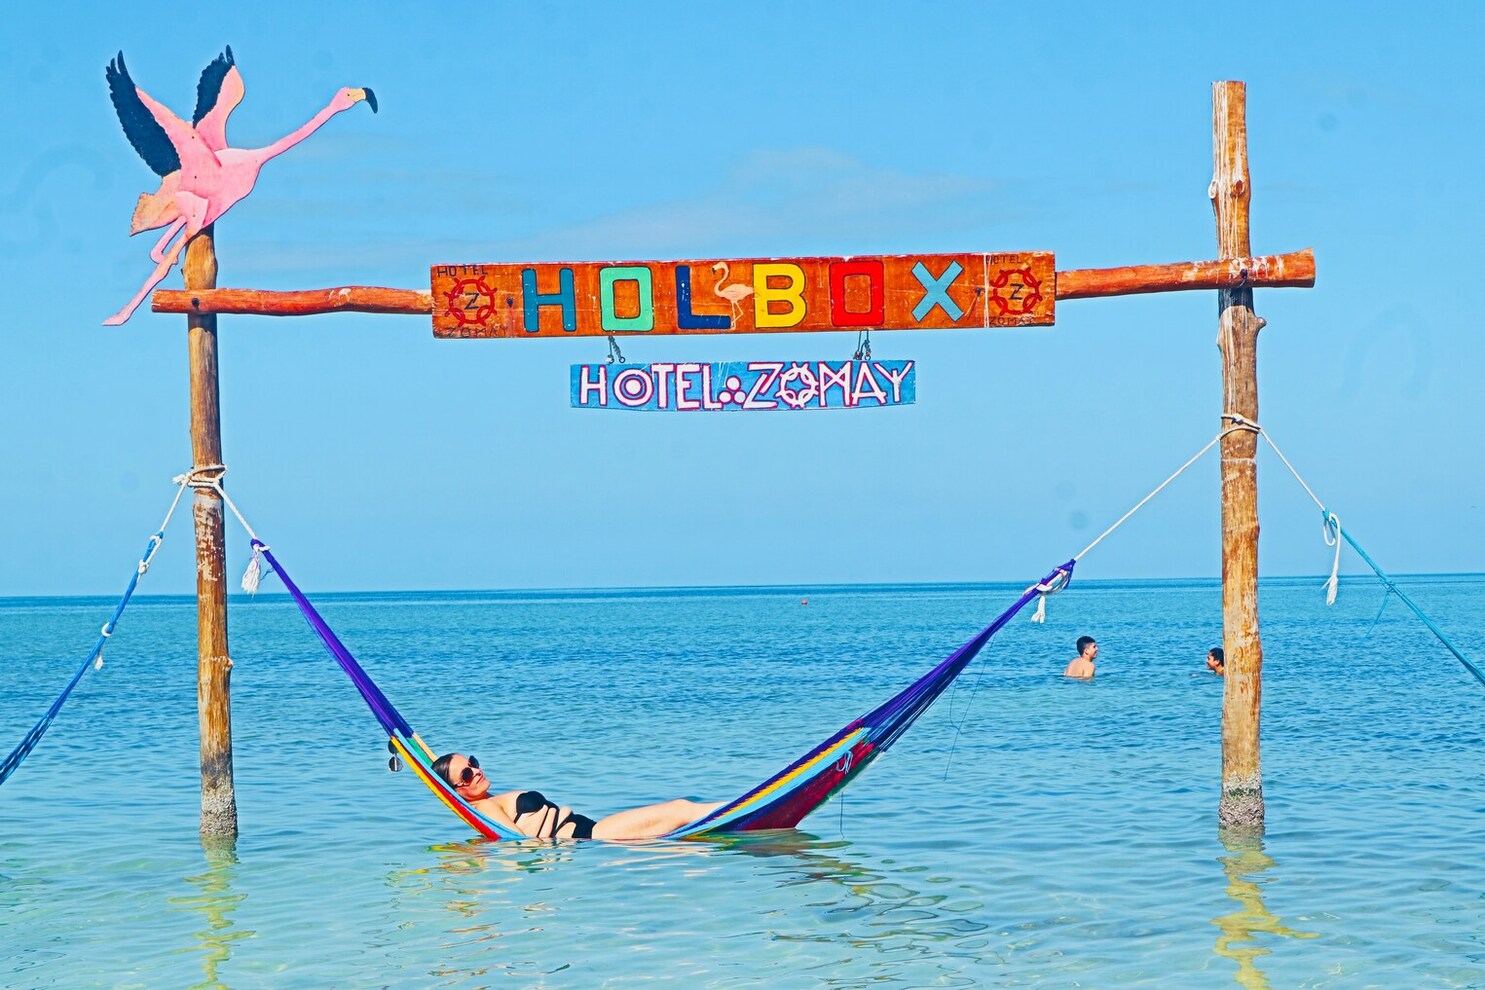 Isla Holbox, Quintana Roo, Mexico